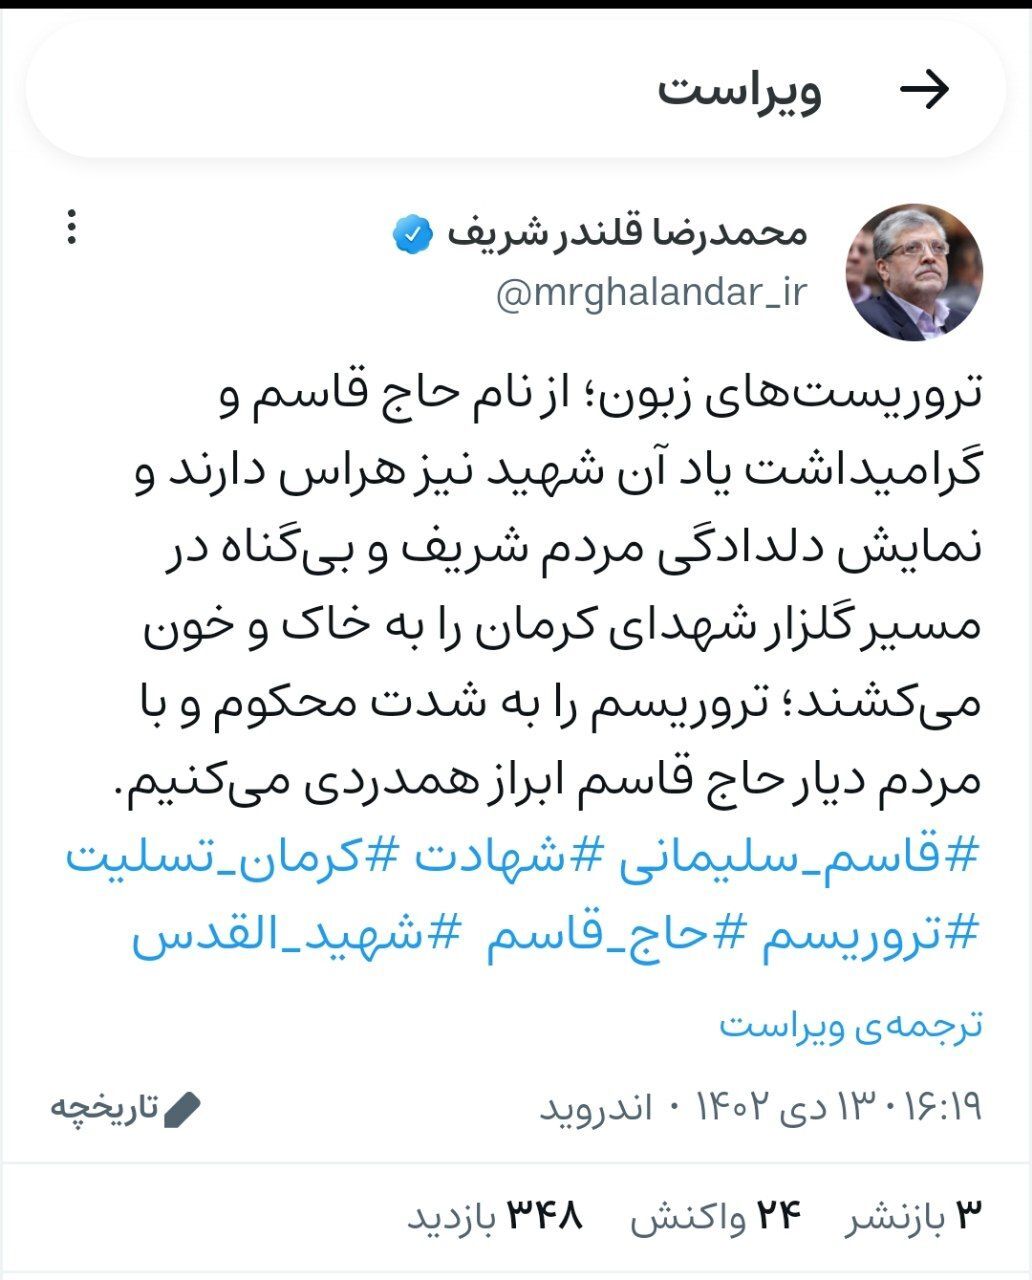 واکنش شهردار مشهد مقدس به حادثه تروریستی کرمان + تصویر